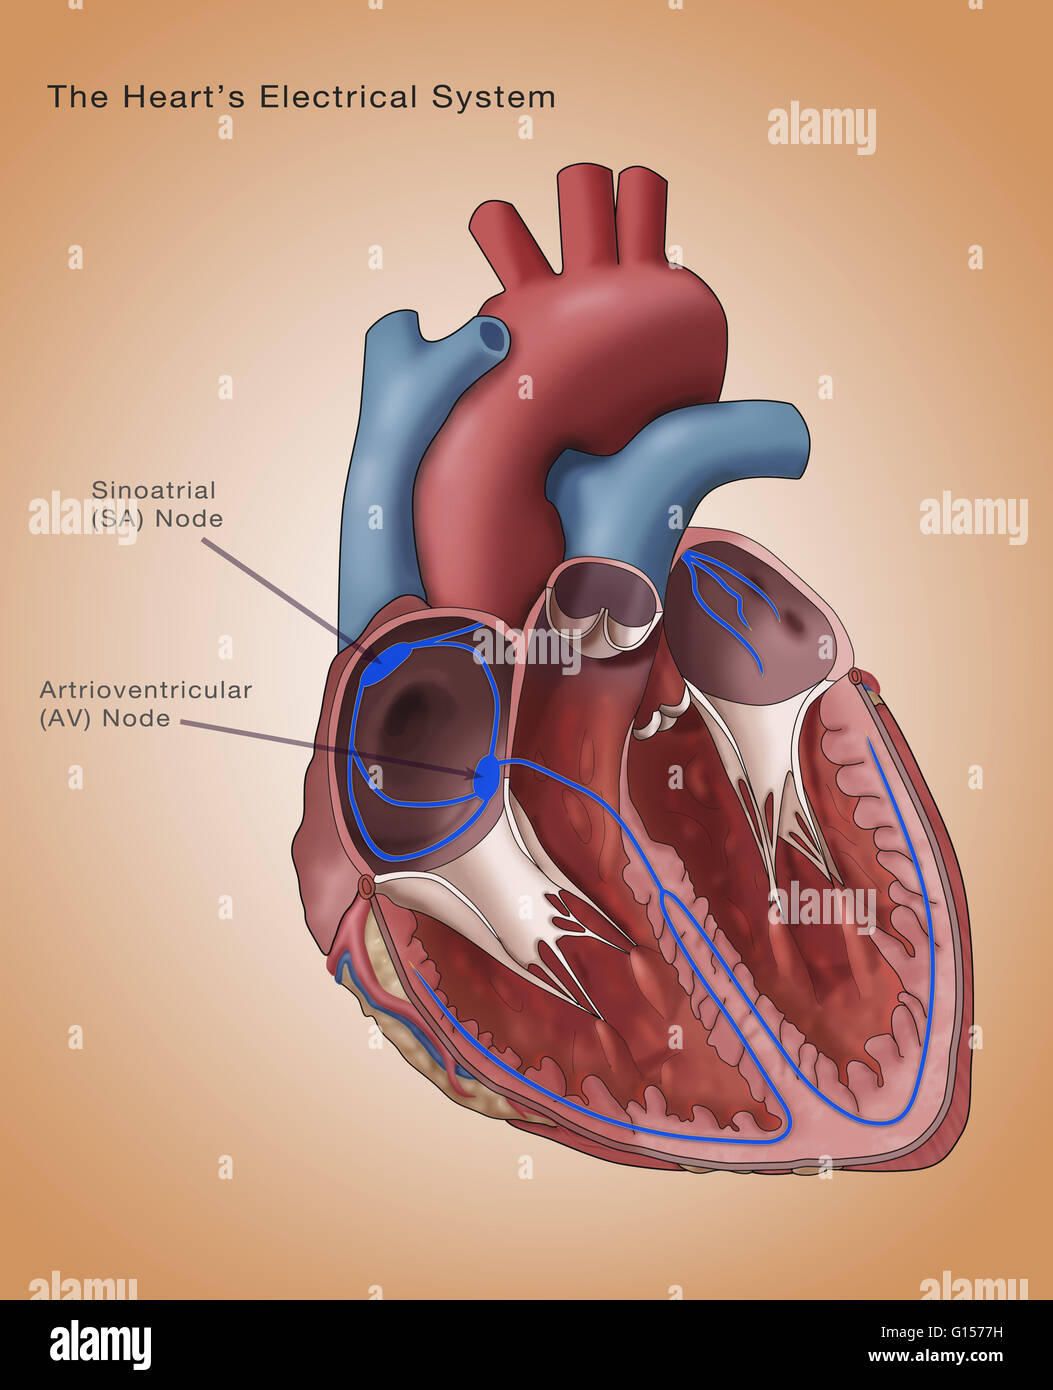 Abbildung zeigt das Herz Elektrik. Der Sinusknoten und Atrioventricular Knoten sind kommentiert. Der sinoatrial (SA)-Knoten (dicken lila Oval oben links) besteht aus self-excitatory Muskelzellen, die rhythmisch auf rund 70 Vertrag Stockfoto